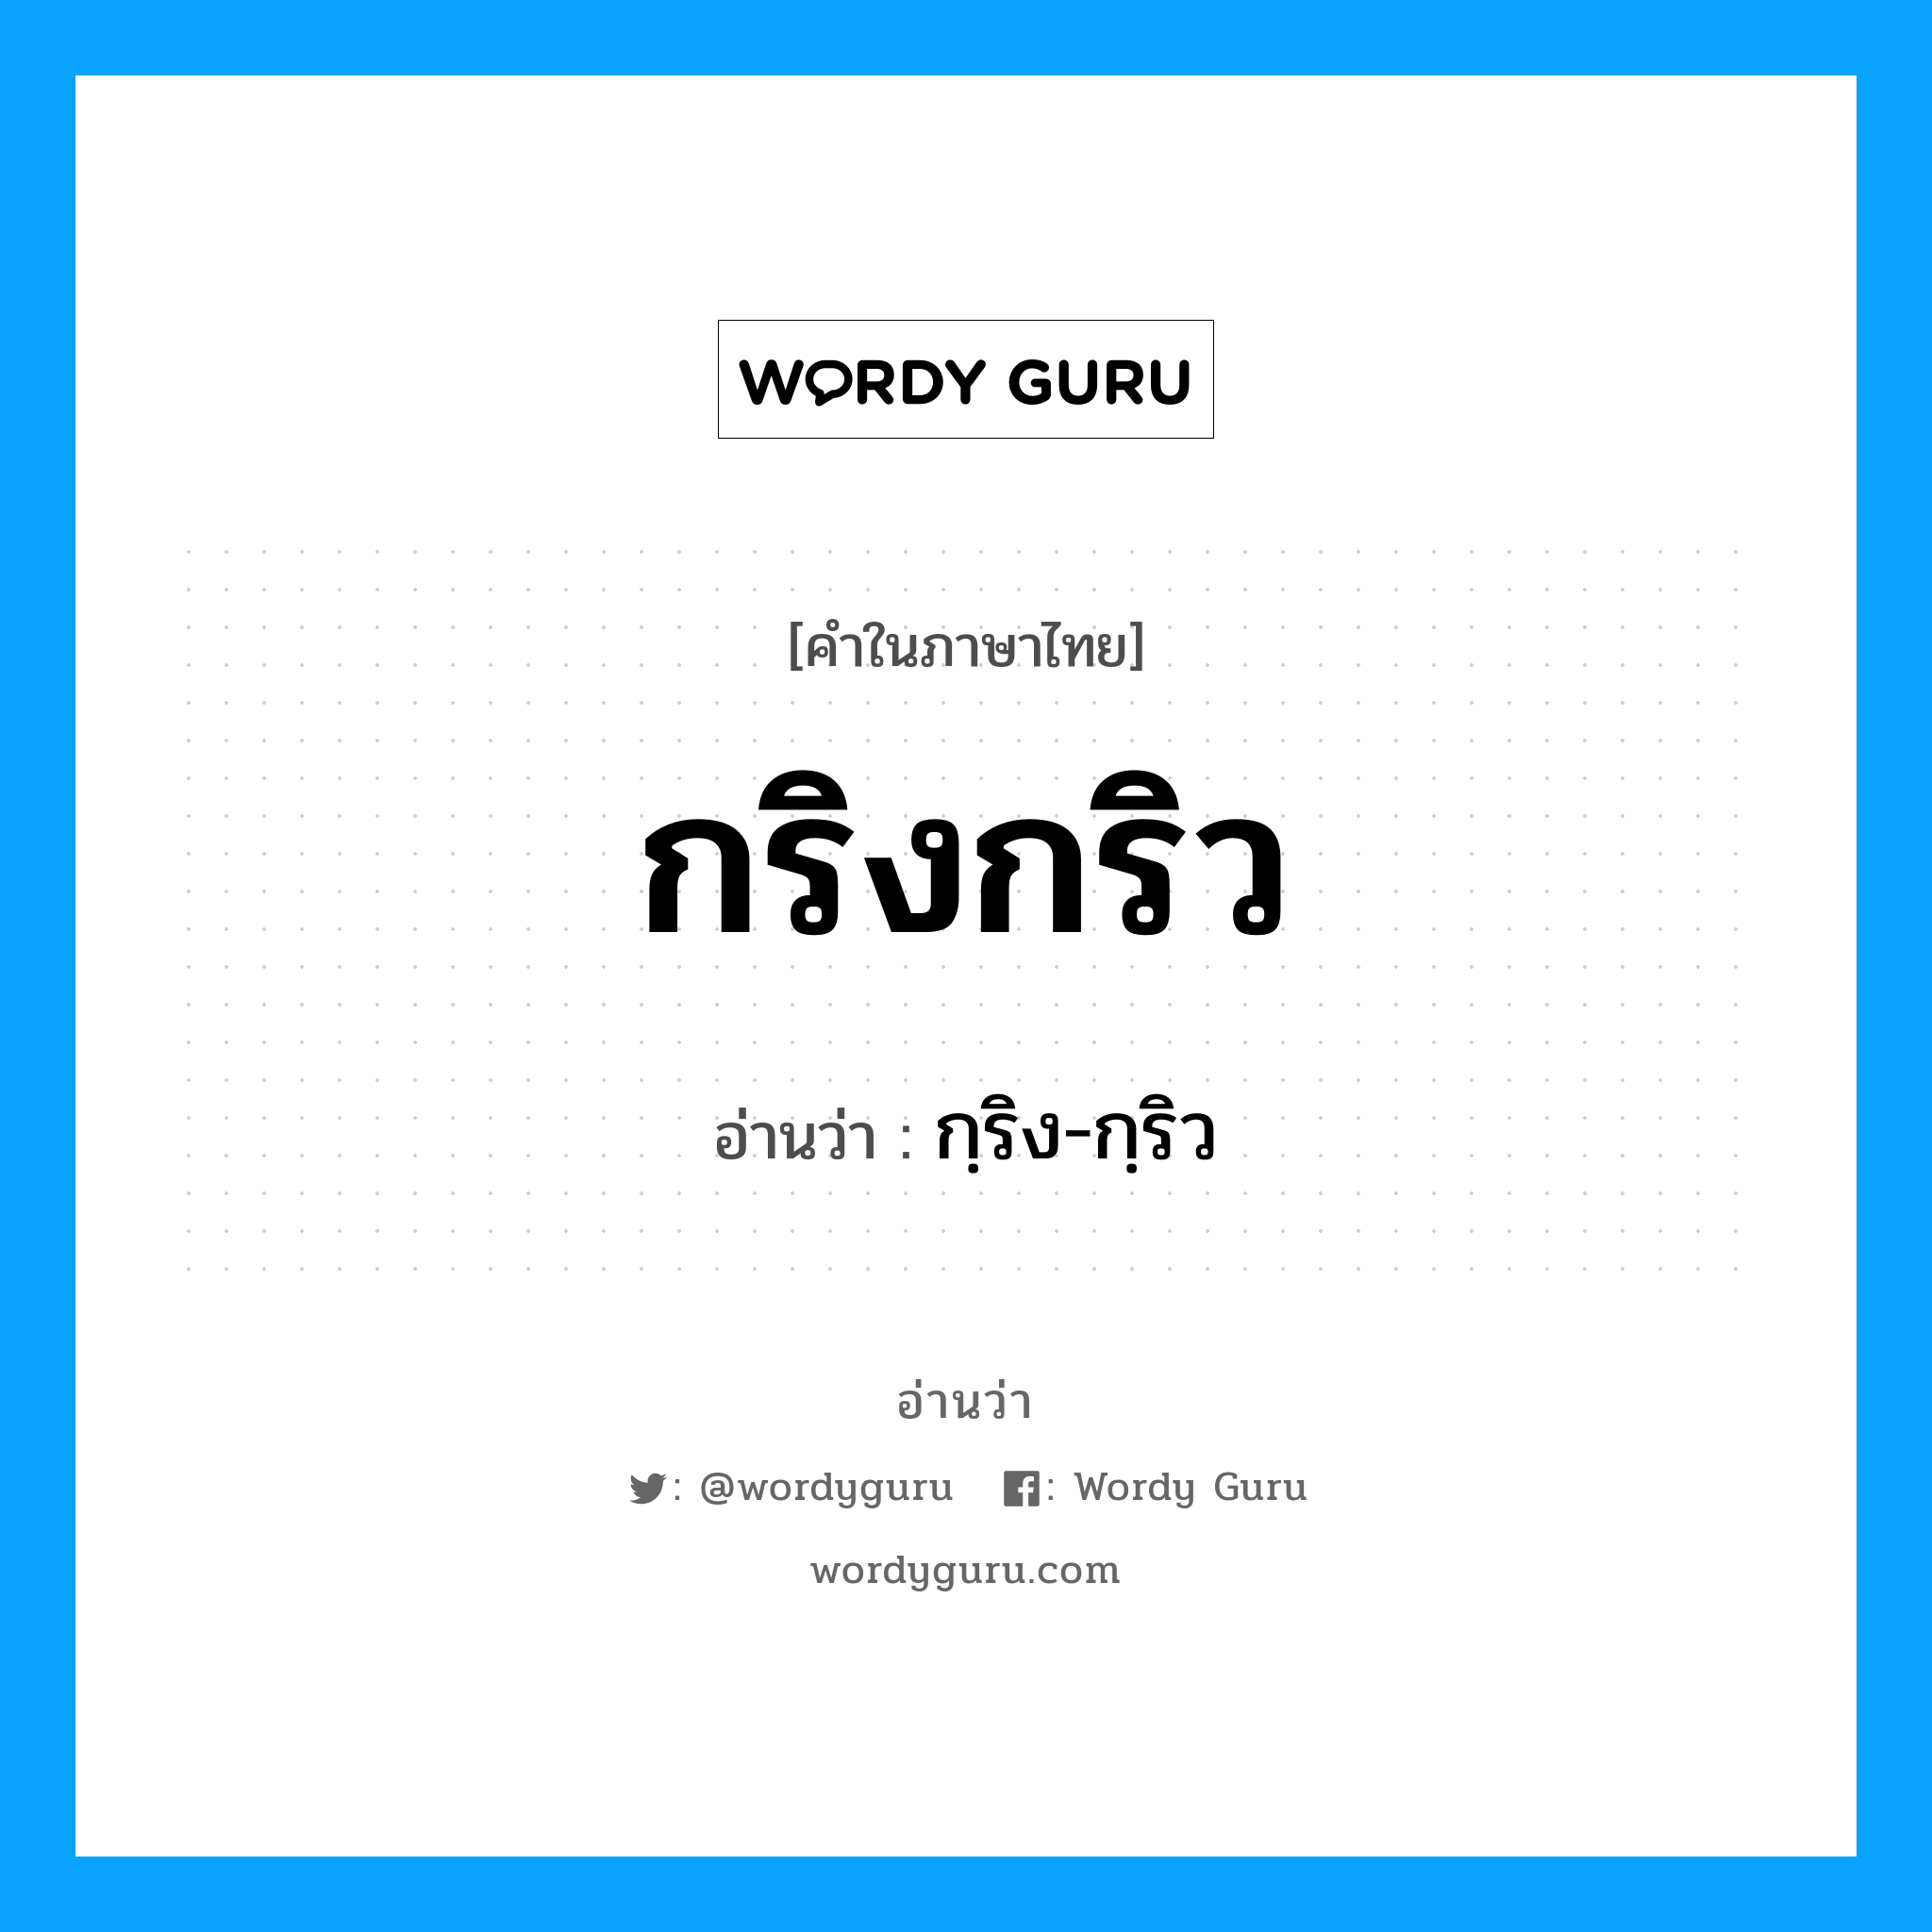 กฺริง-กฺริว เป็นคำอ่านของคำไหน?, คำในภาษาไทย กฺริง-กฺริว อ่านว่า กริงกริว